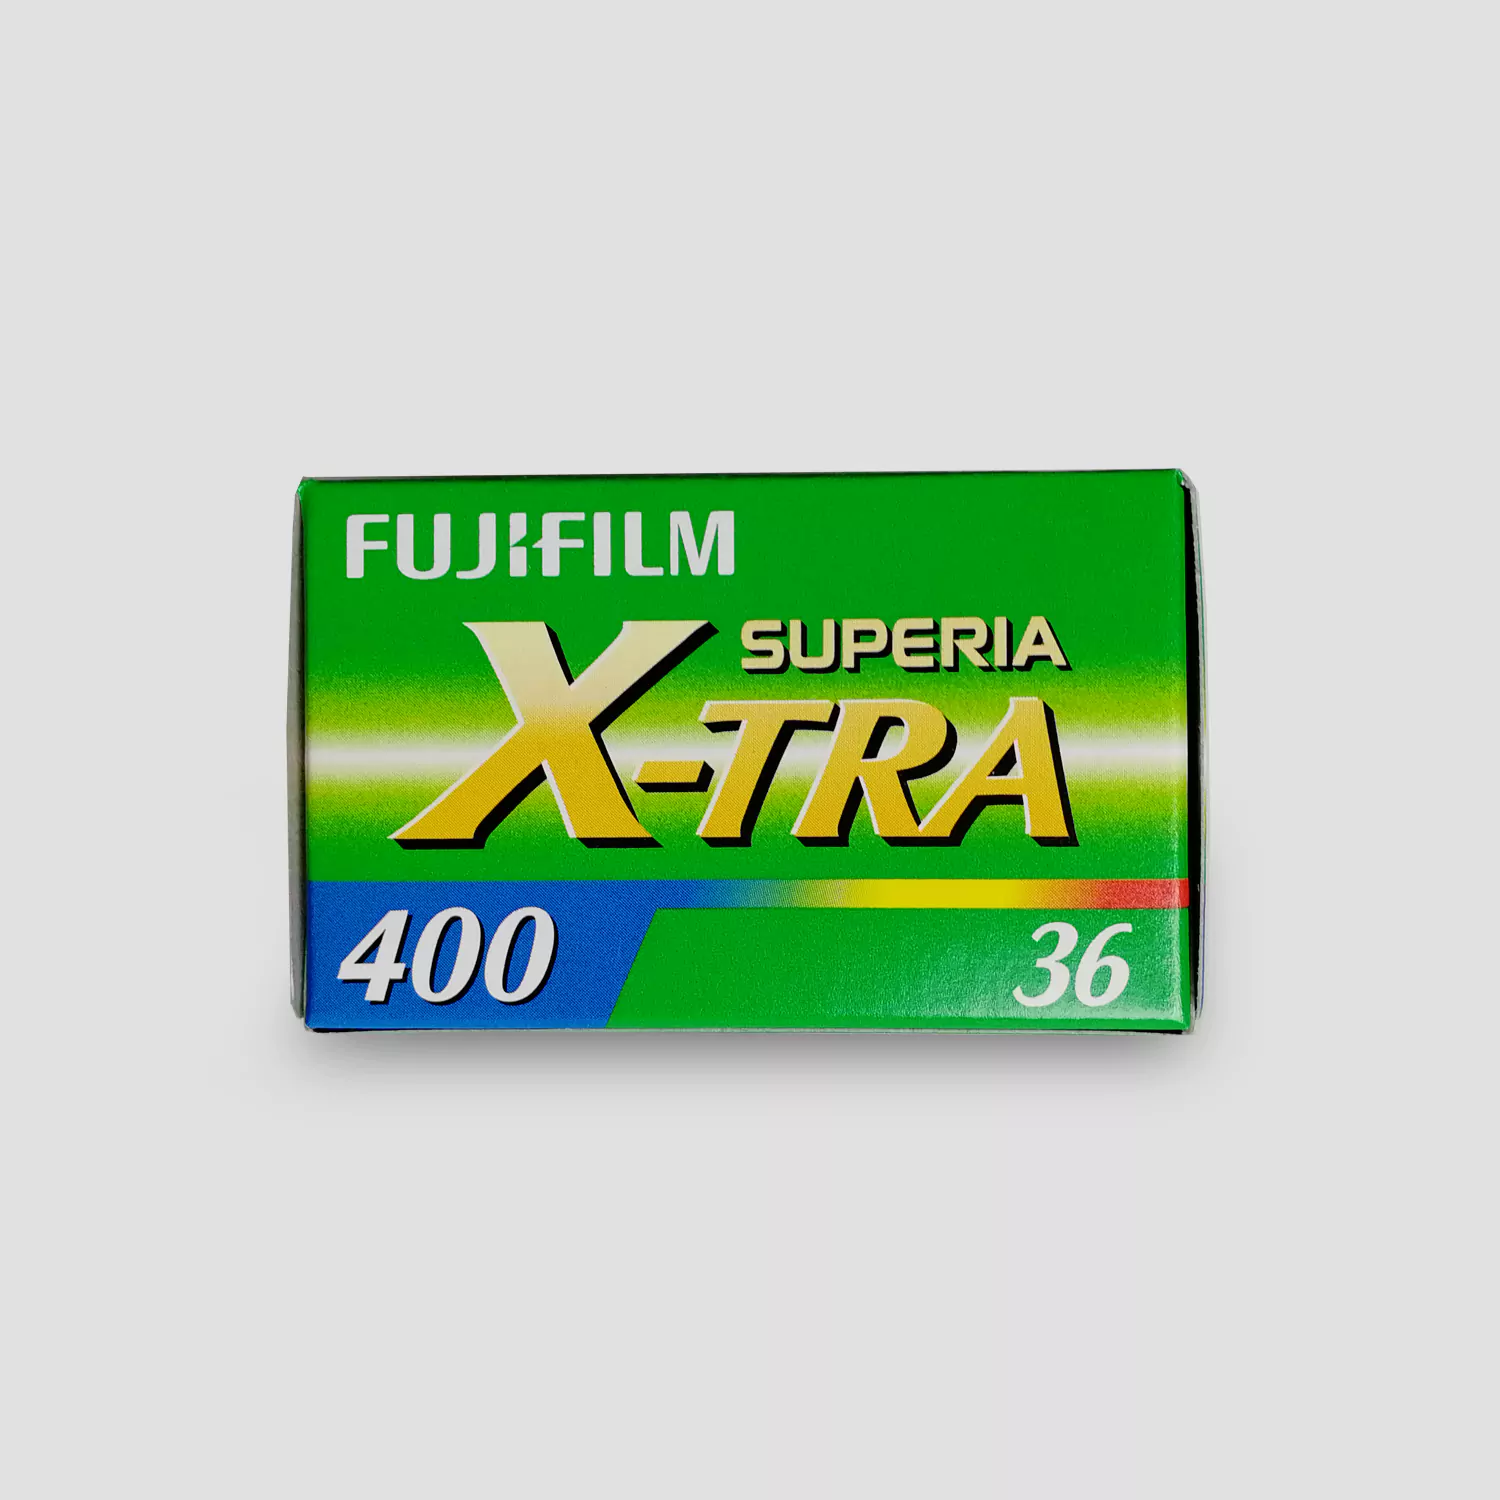 Pellicule couleur argentique Fujifilm X-tra superia 400 iso